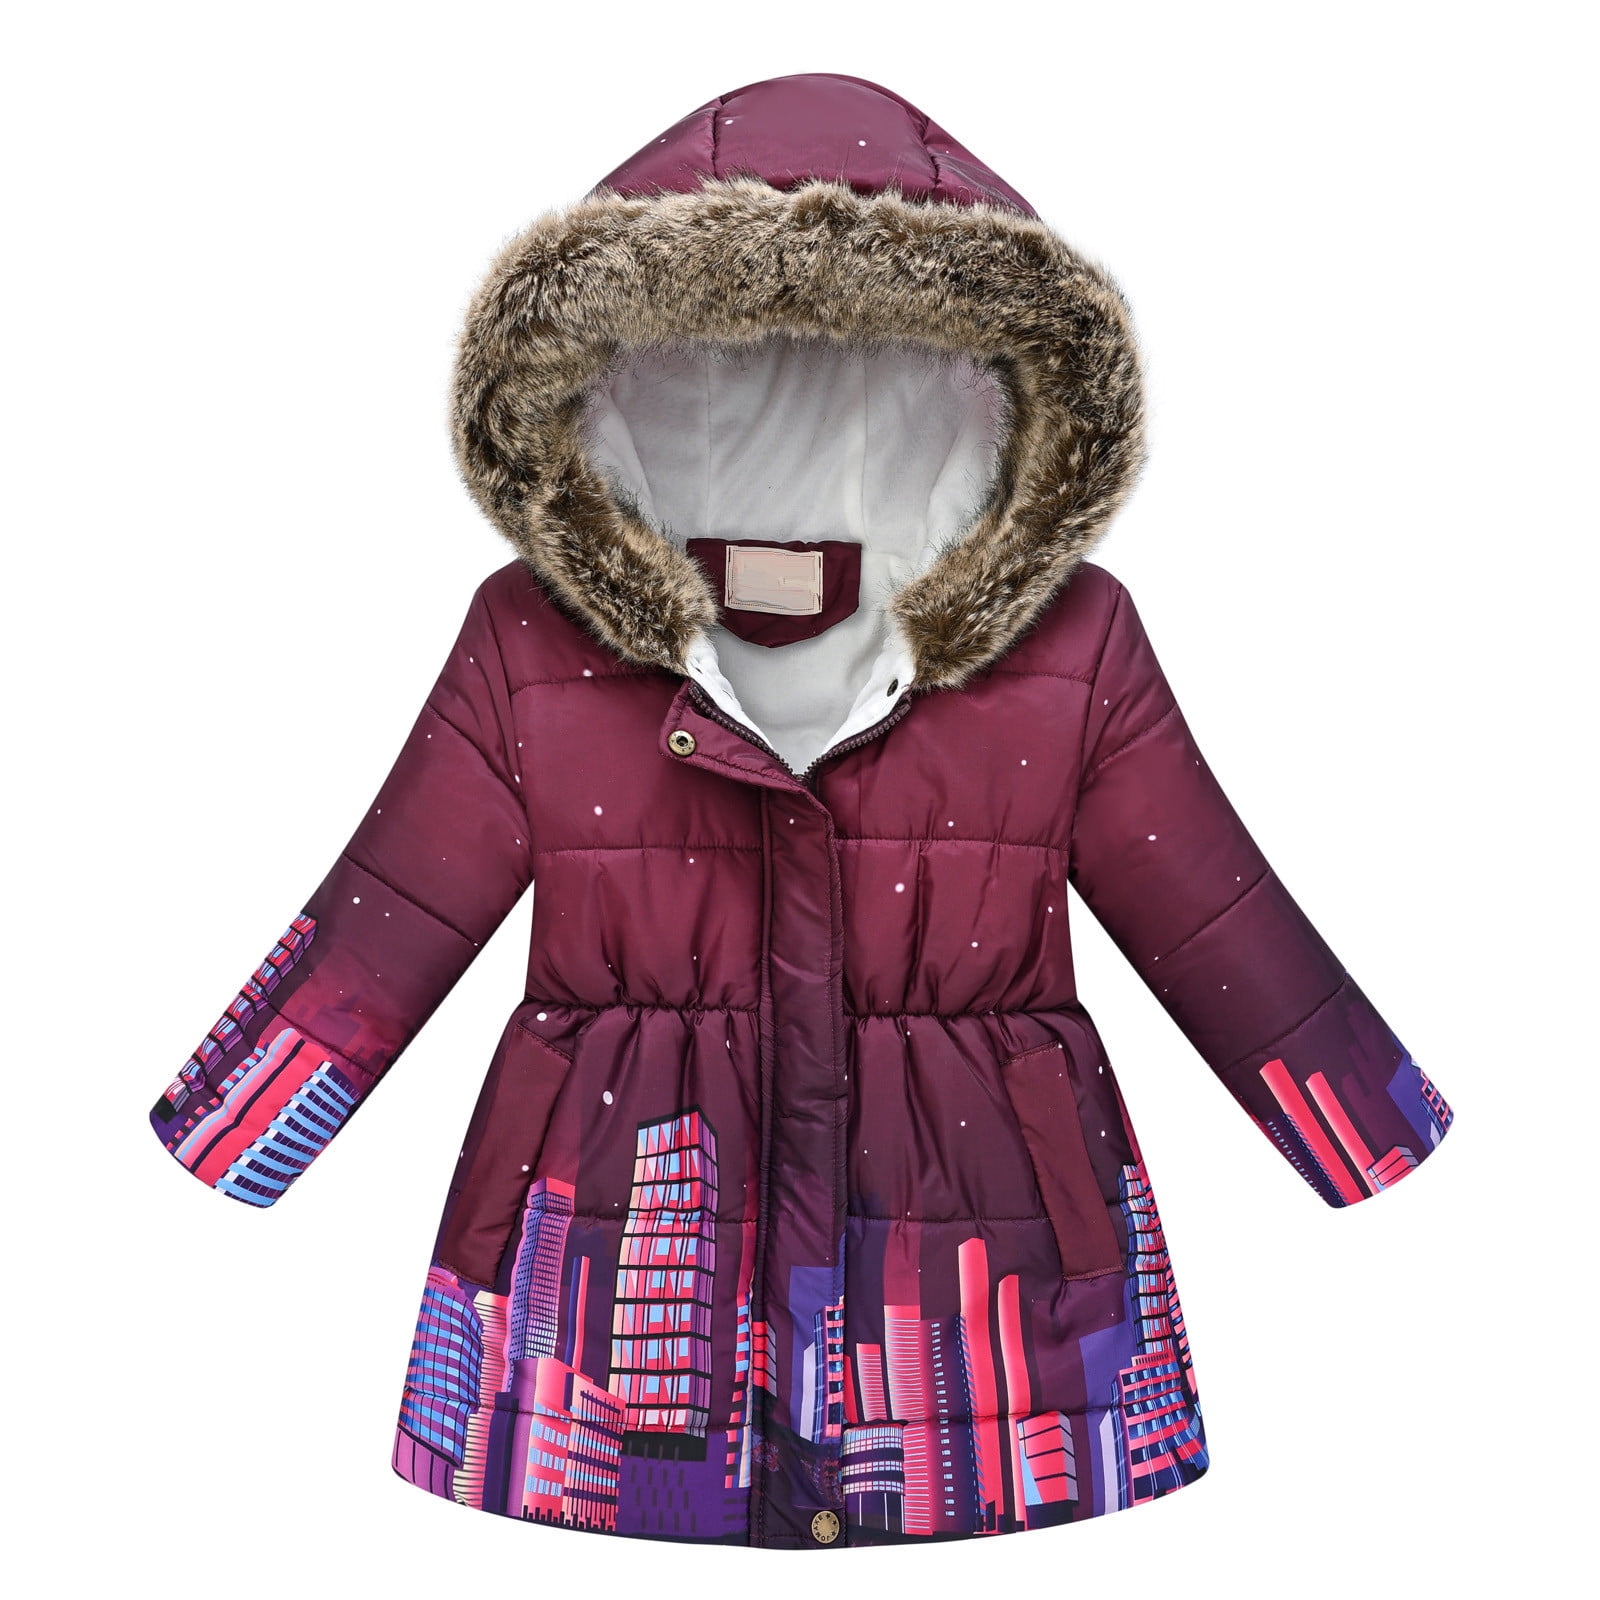 Coat for Girls Girls Coats Size 6 Toddler Girls Winter Long Sleeve ...